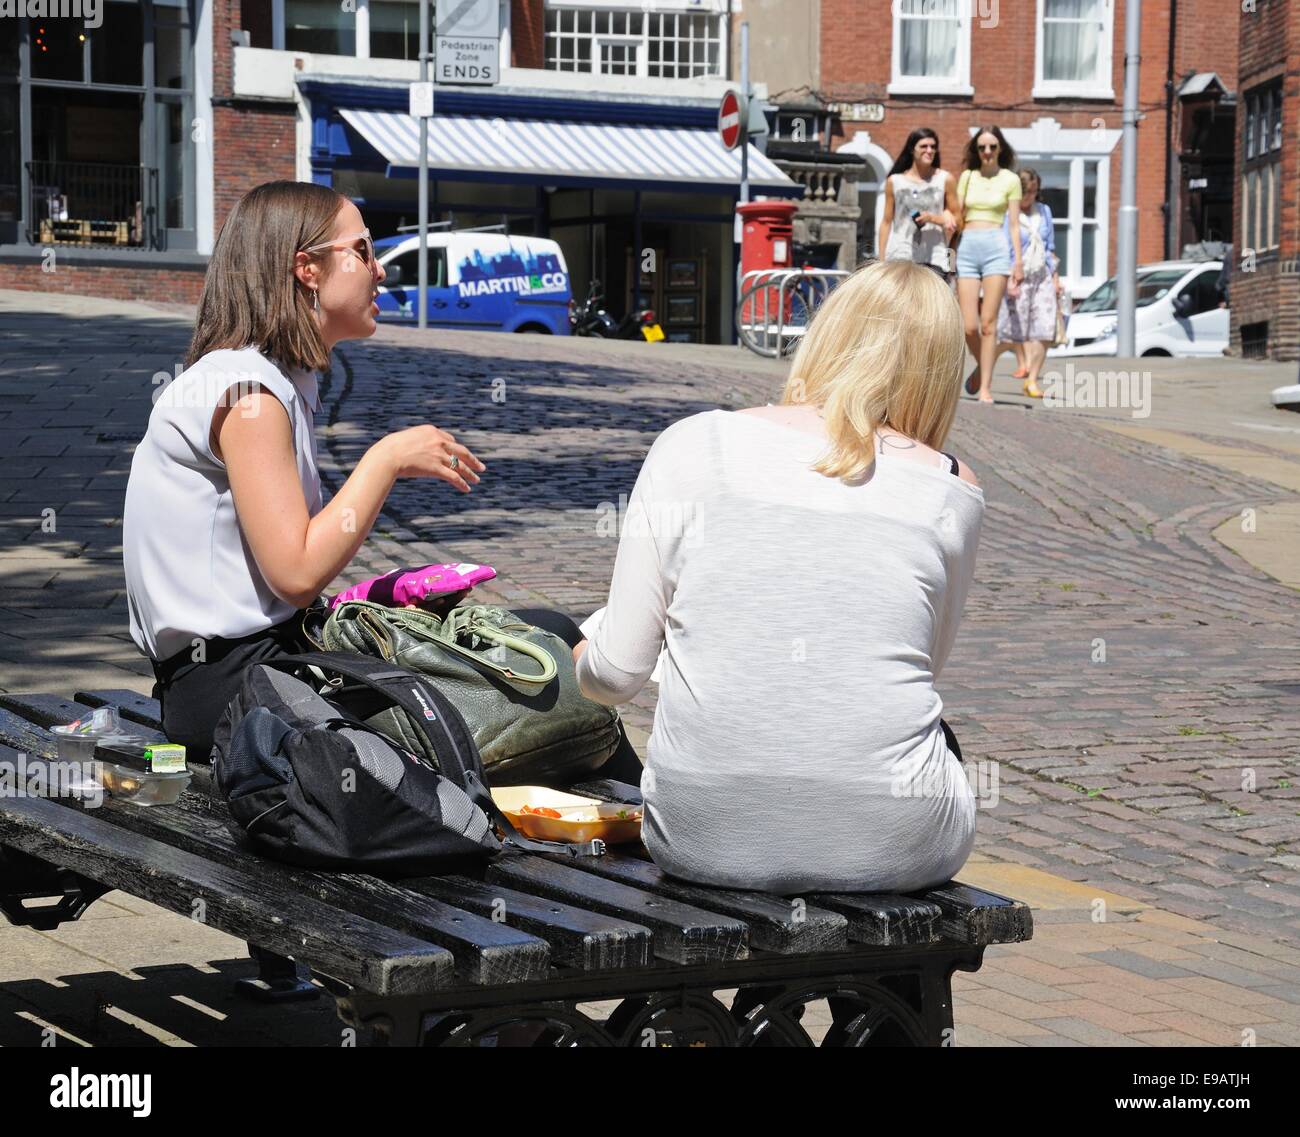 Deux jeunes femmes assises sur un banc en train de déjeuner le long de la route du château dans le centre-ville, Castle Road, Nottingham, Angleterre, Royaume-Uni. Banque D'Images